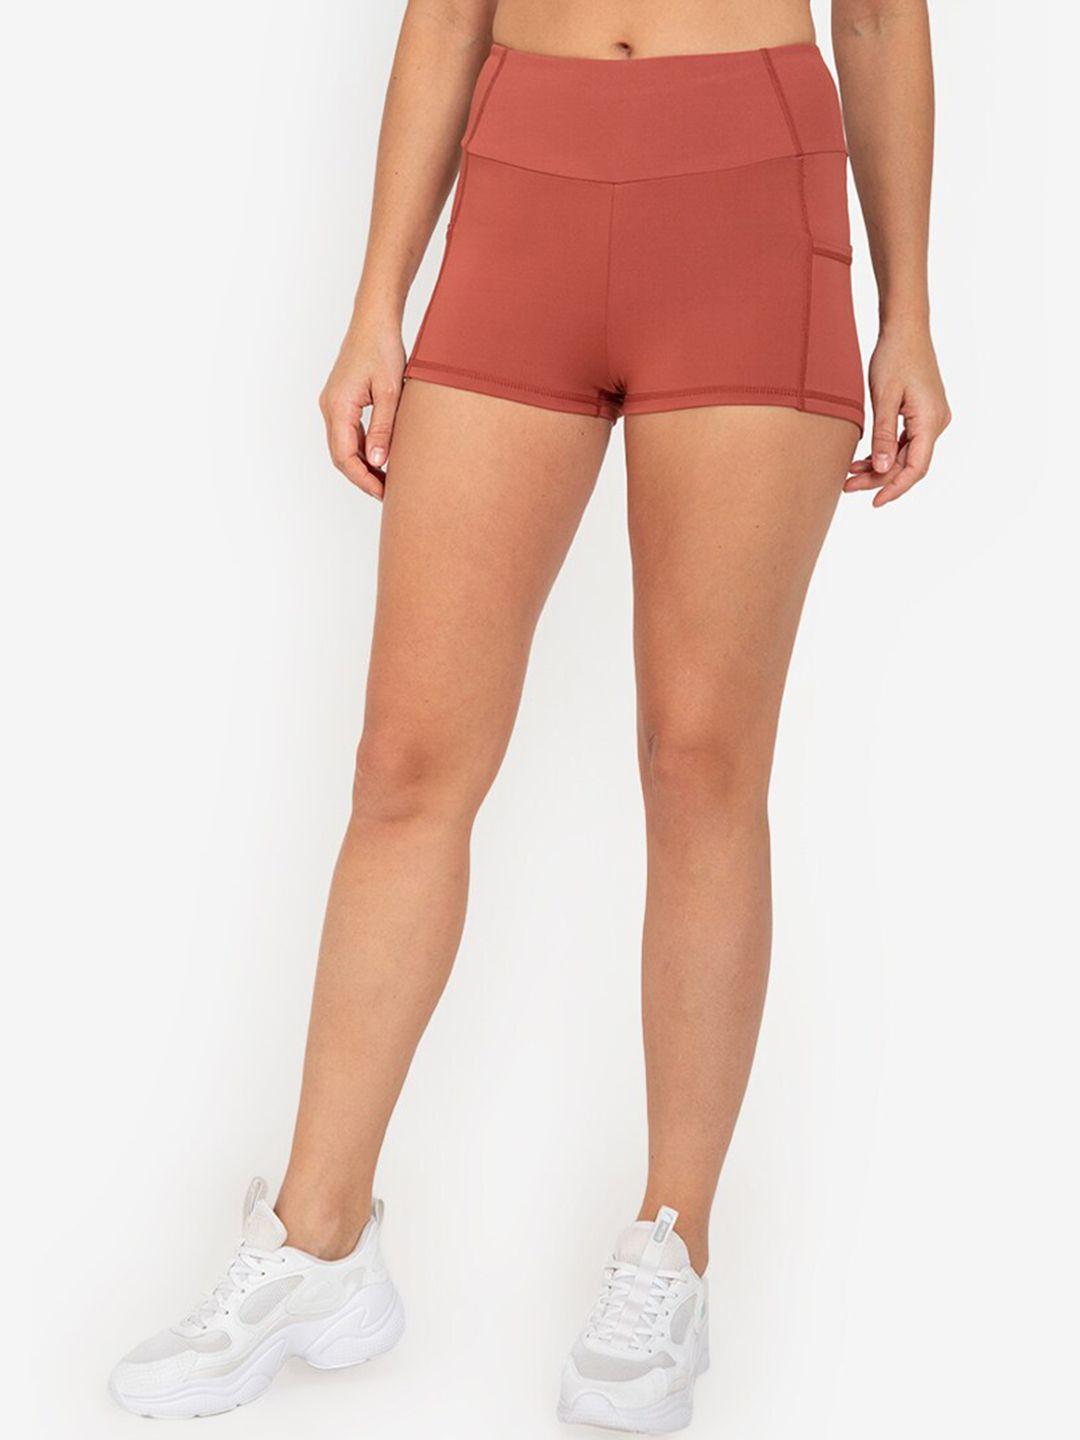 zalora-active-women-orange-high-rise-training-or-gym-sports-shorts